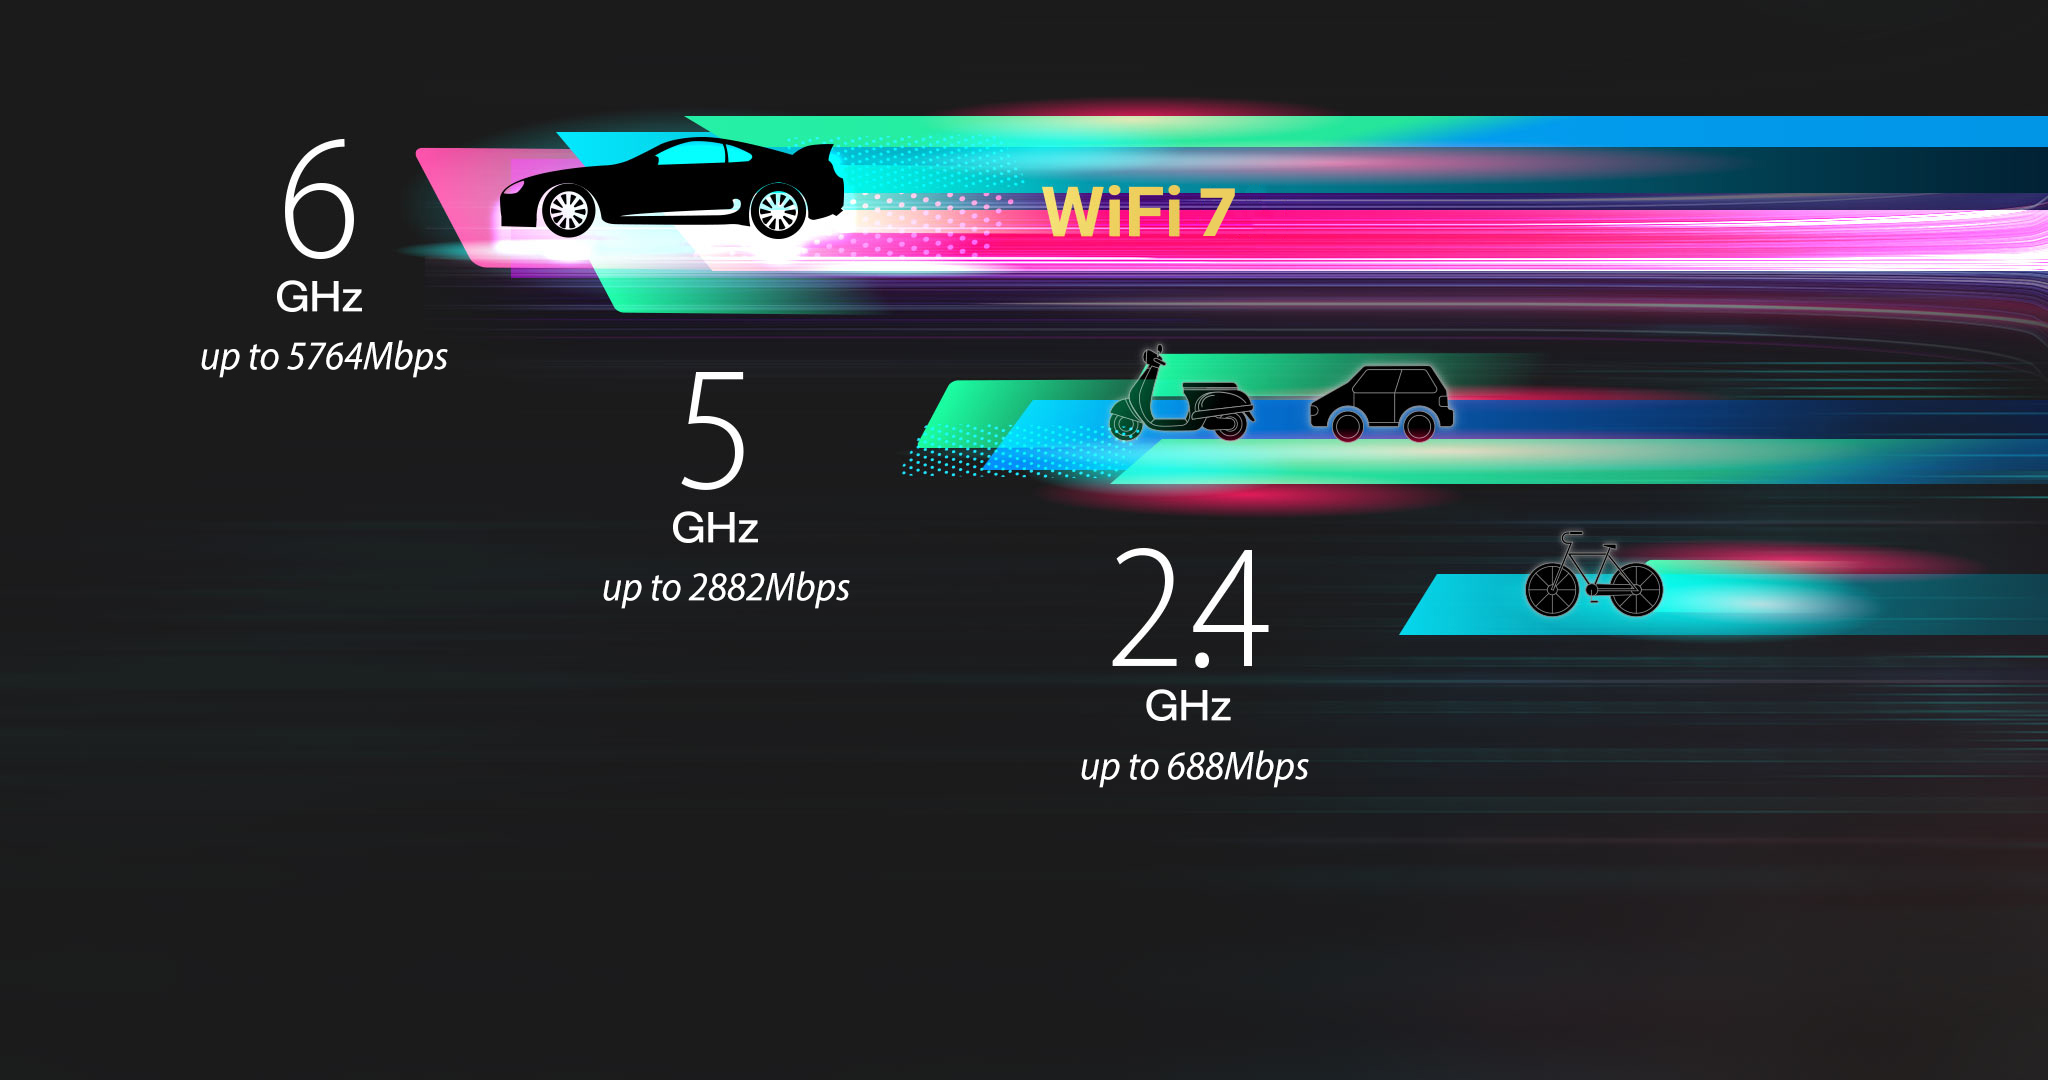 De WiFi 7 6GHz-band biedt 320MHz-kanalen en verhoogt de snelheid tot 5764Mbps.